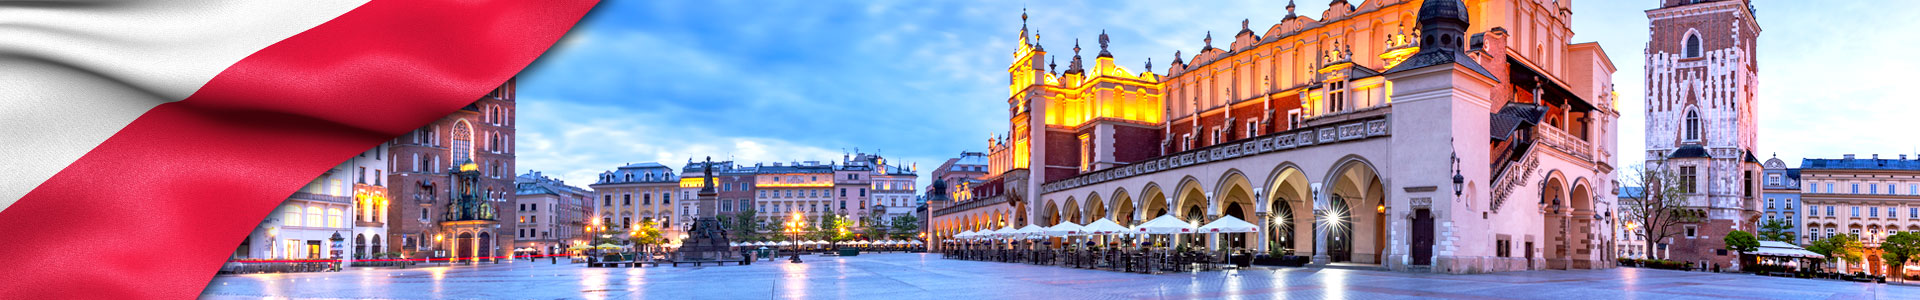 Bandera de Polonia y plaza principal del mercado, Cracovia, Polonia